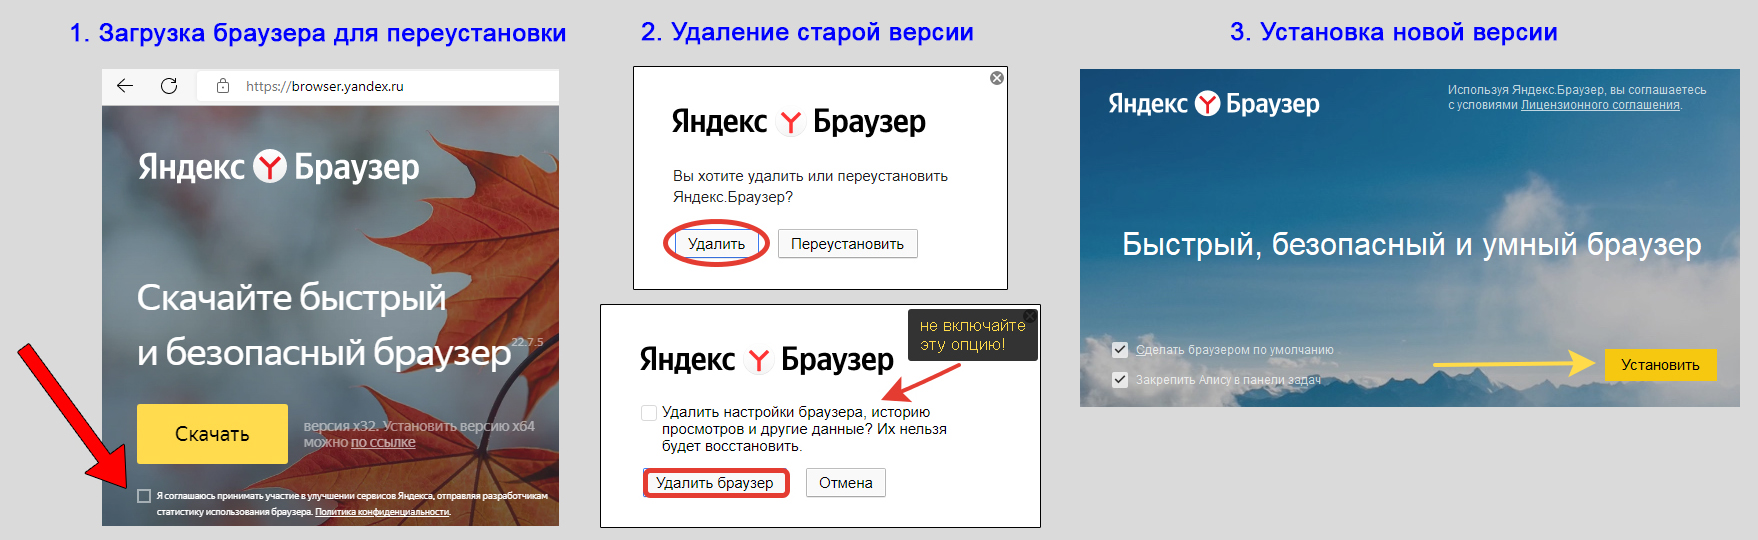 Процесс переустановки Yandex Browser с сохранением данных.